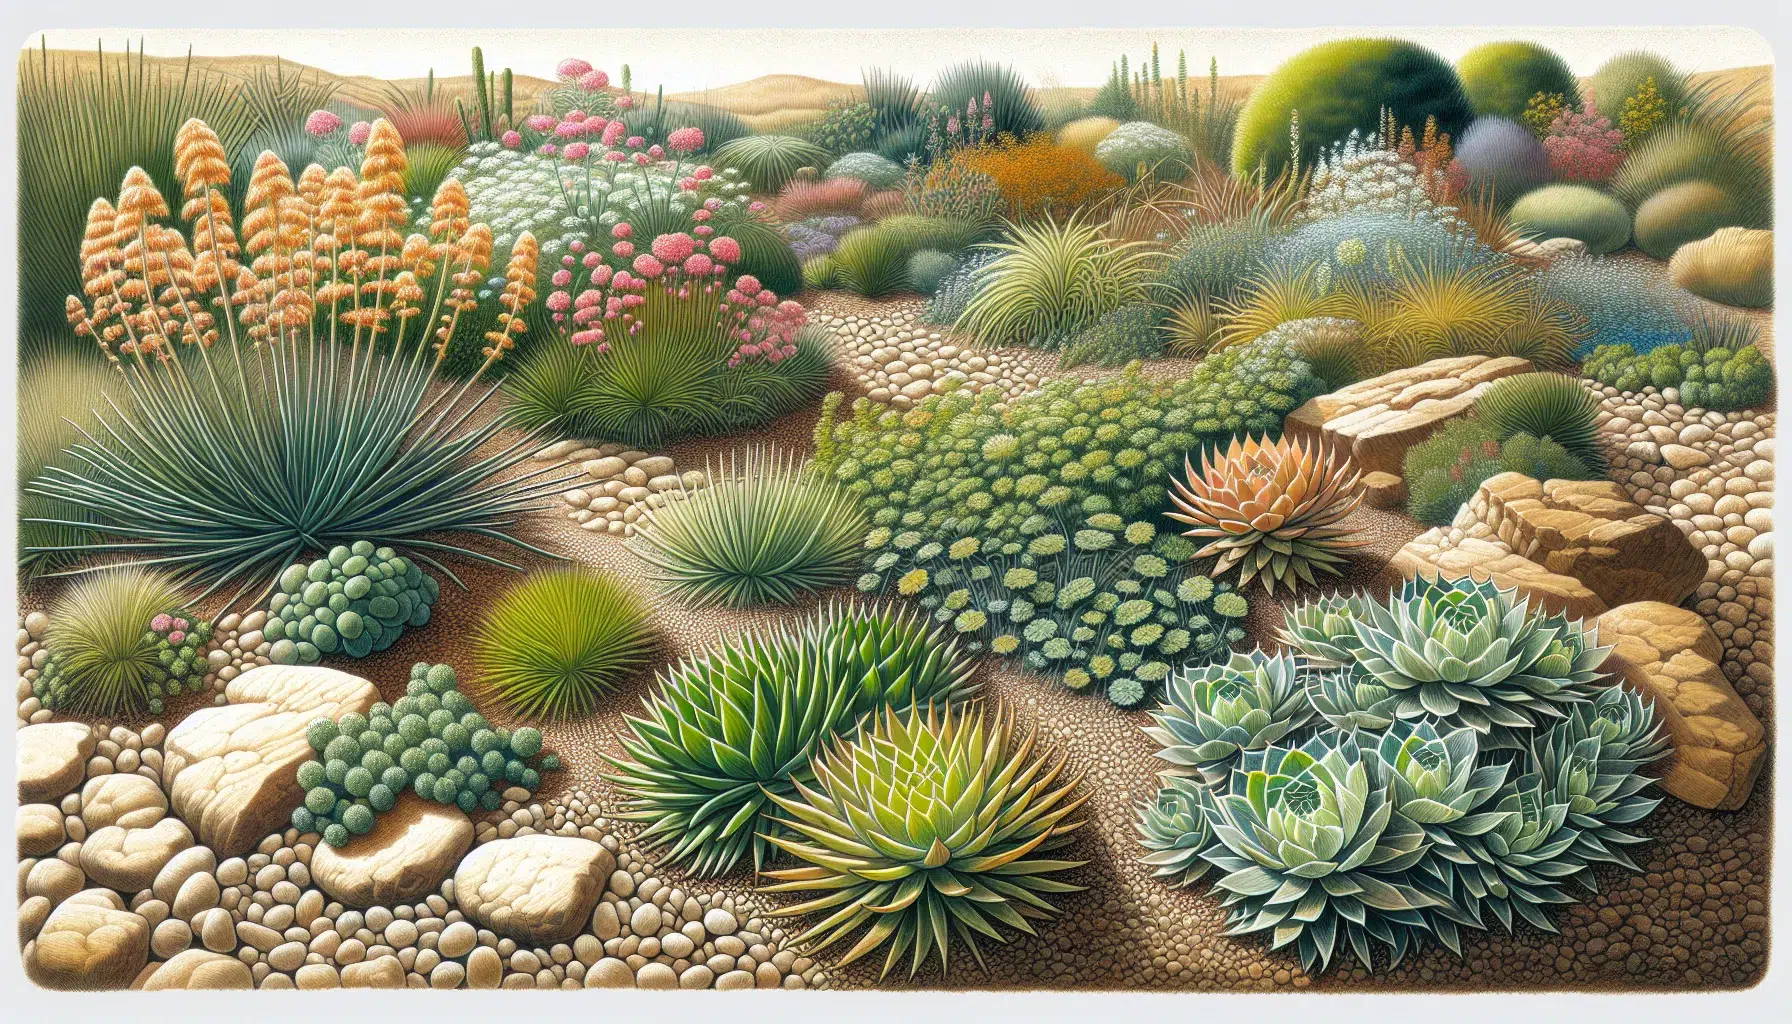 Imagen ilustrativa de diversas plantas tapizantes en un jardín seco, mostrando su resistencia a la sequía.